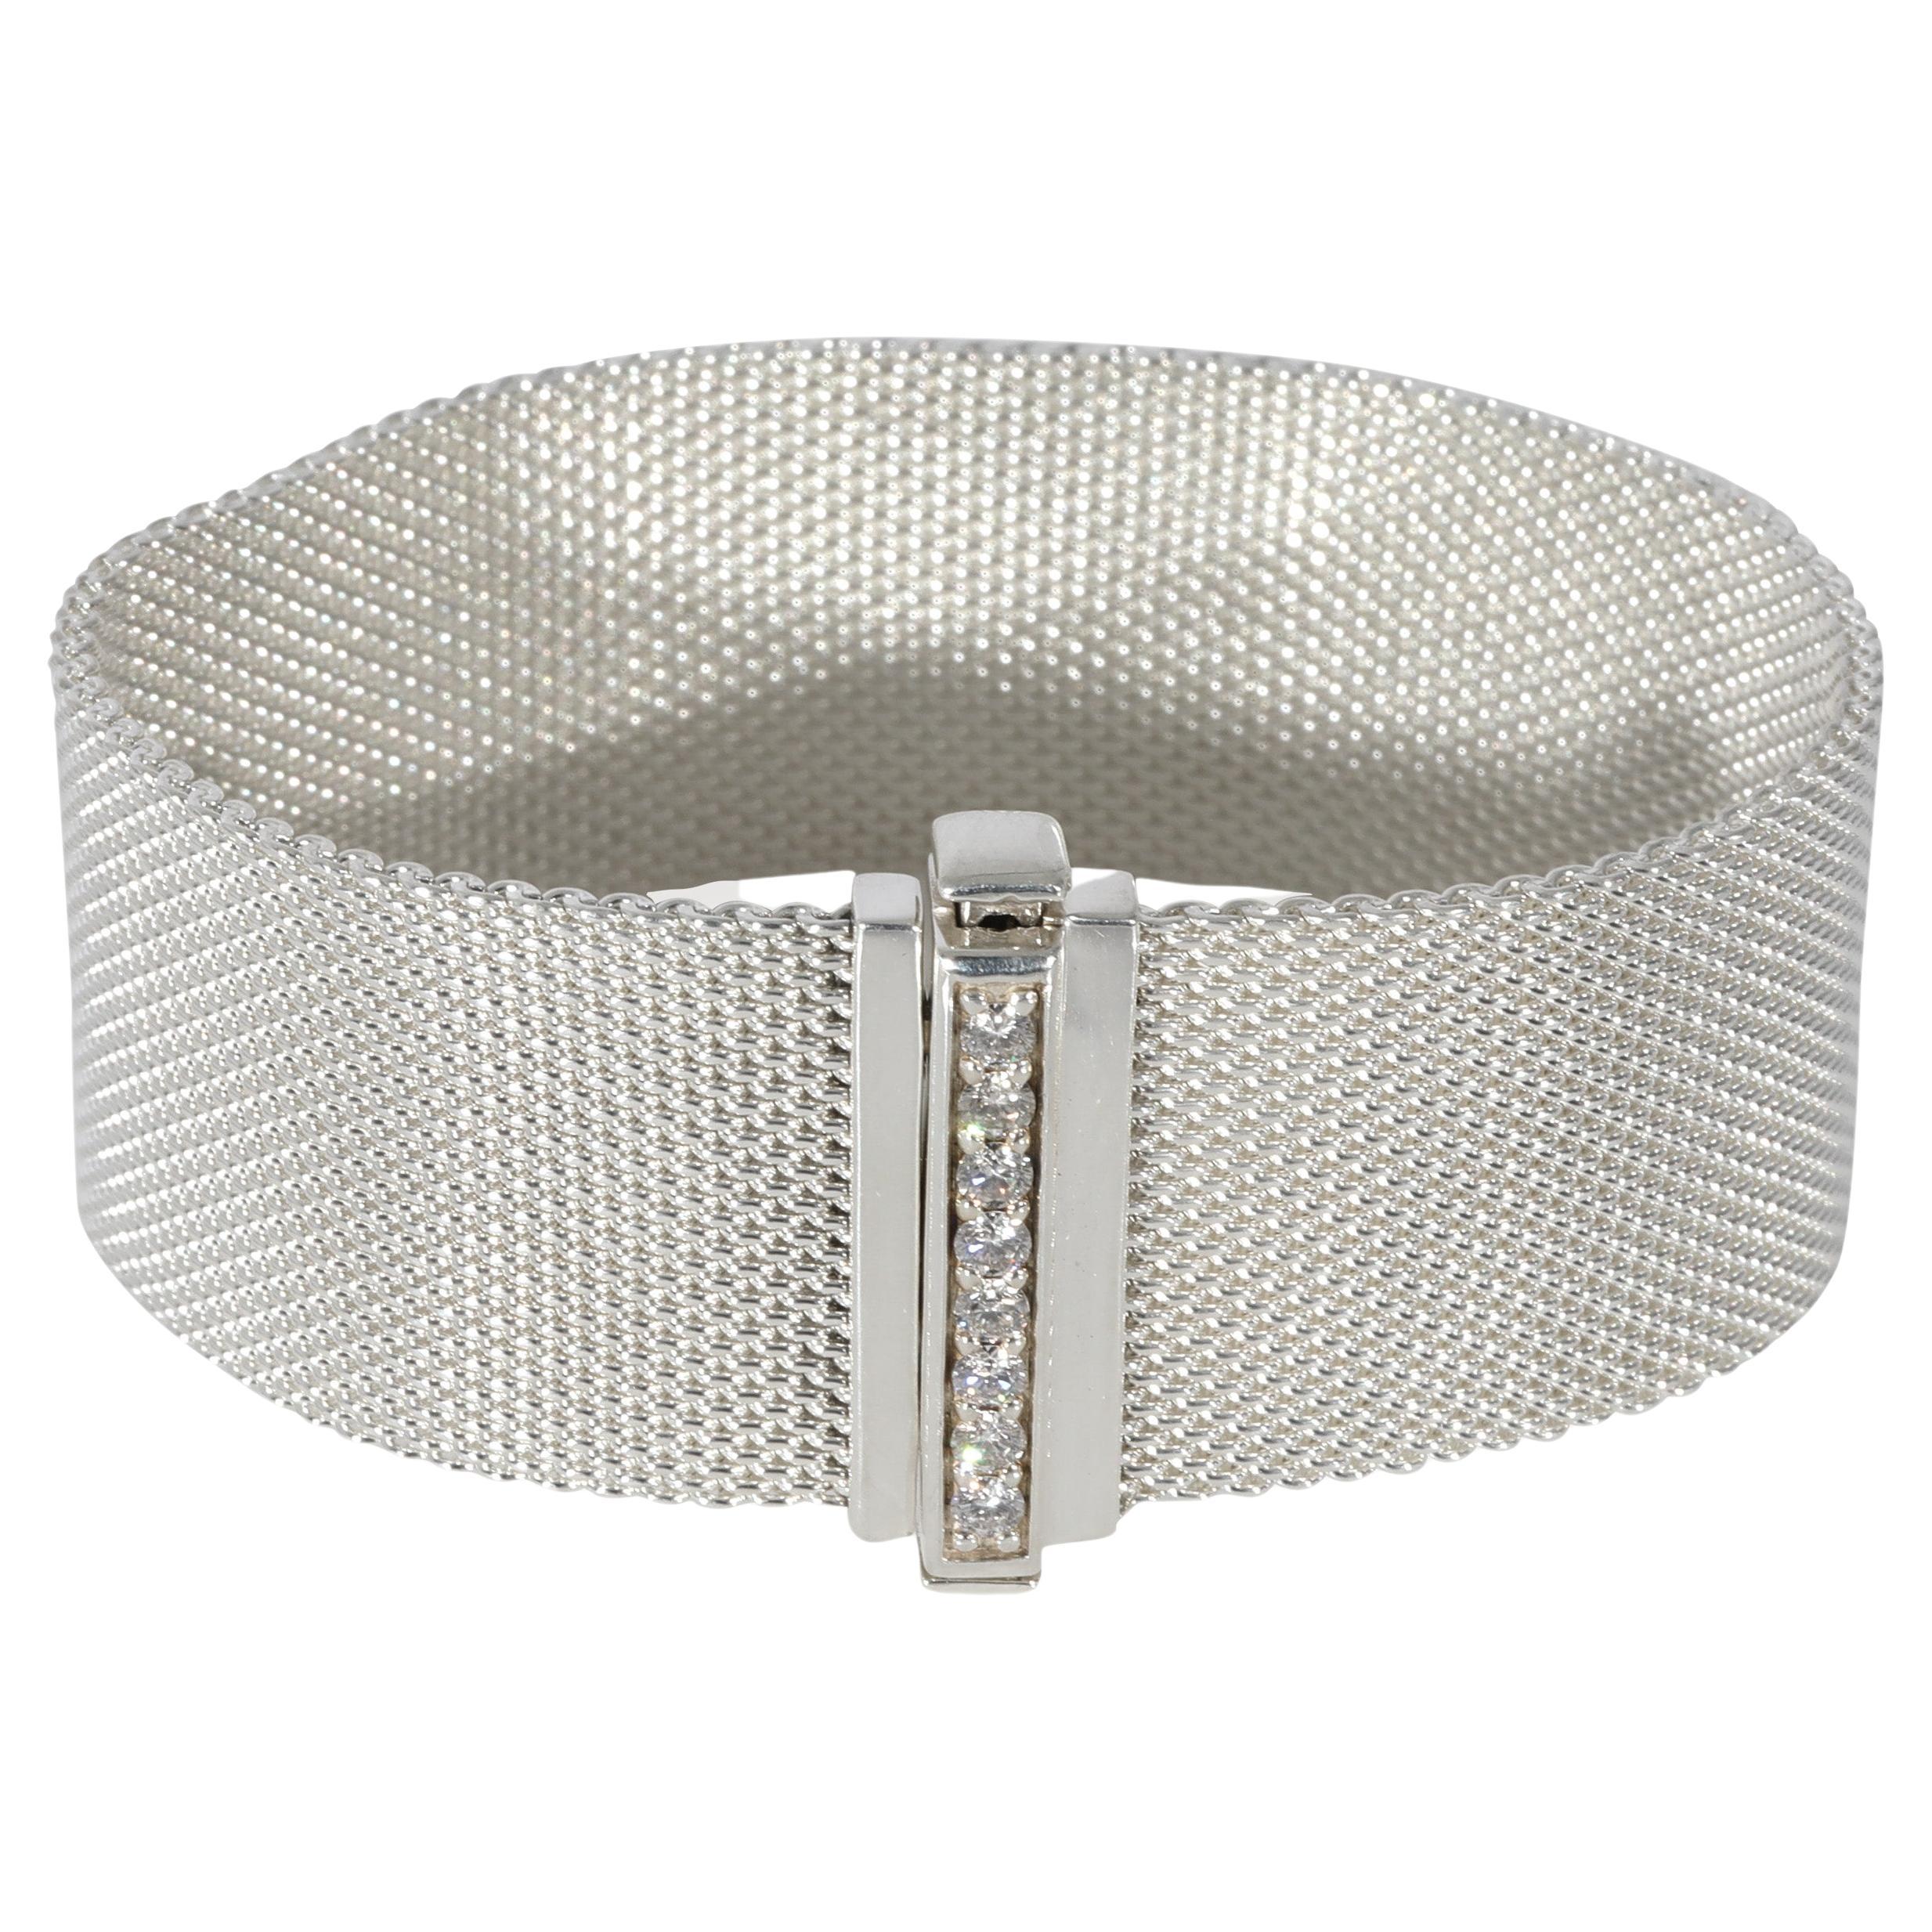 Tiffany & Co. Somerset Diamond Bracelet in Sterling Silver 0.32 CTW